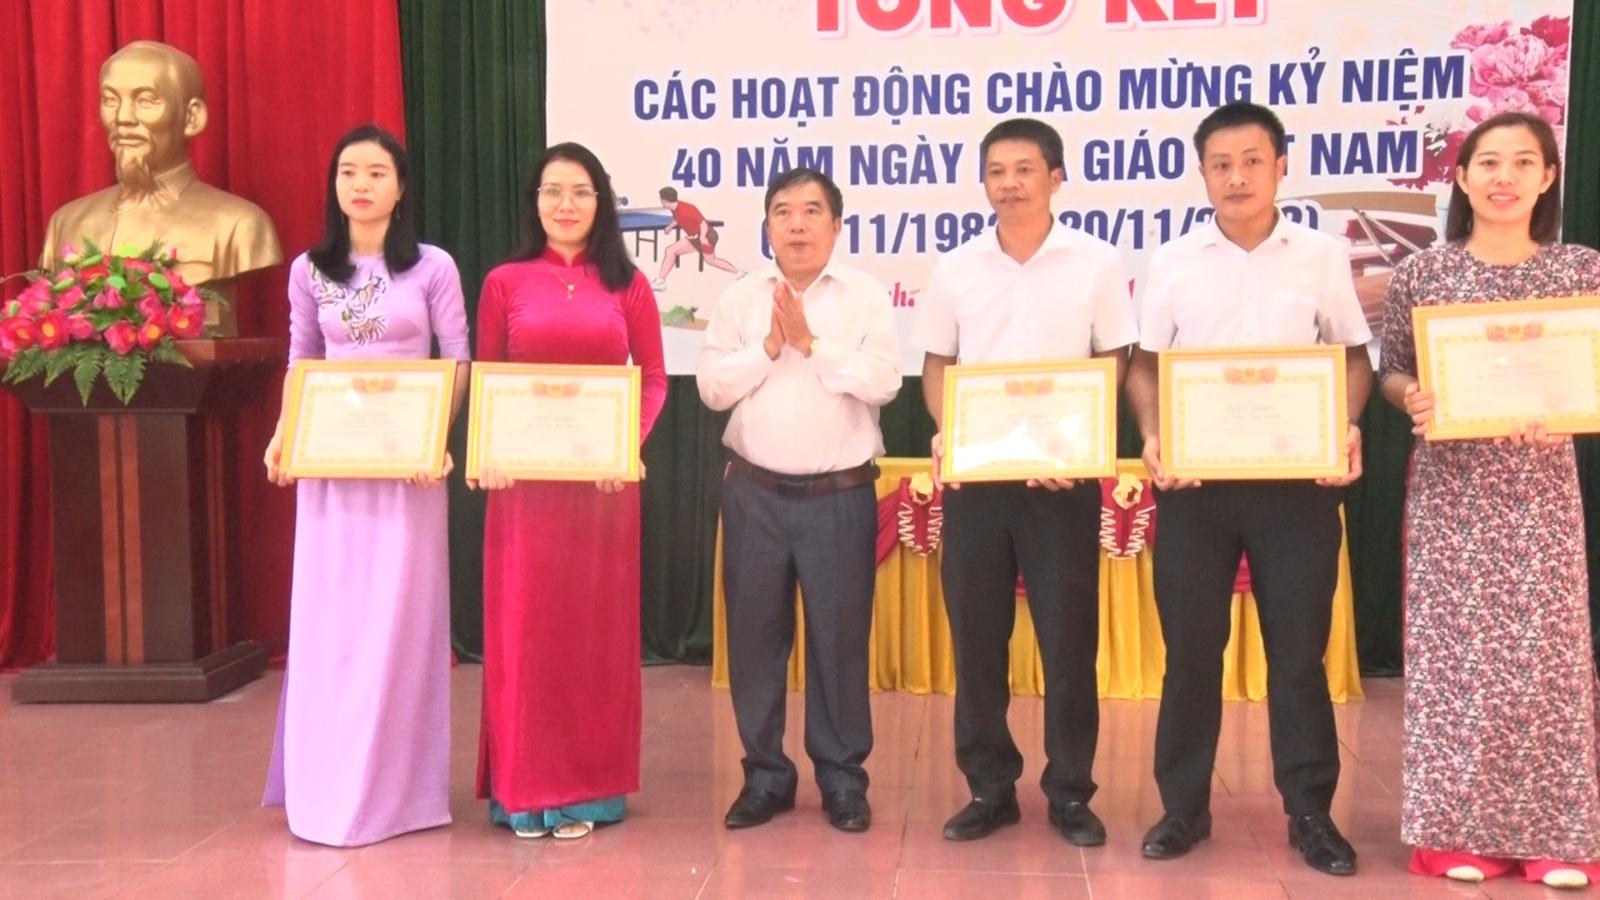 Phòng GD&ĐT huyện Gio Linh tổ chức Hội nghị tổng kết các hoạt động chào mừng kỷ niệm 40 năm ngày...